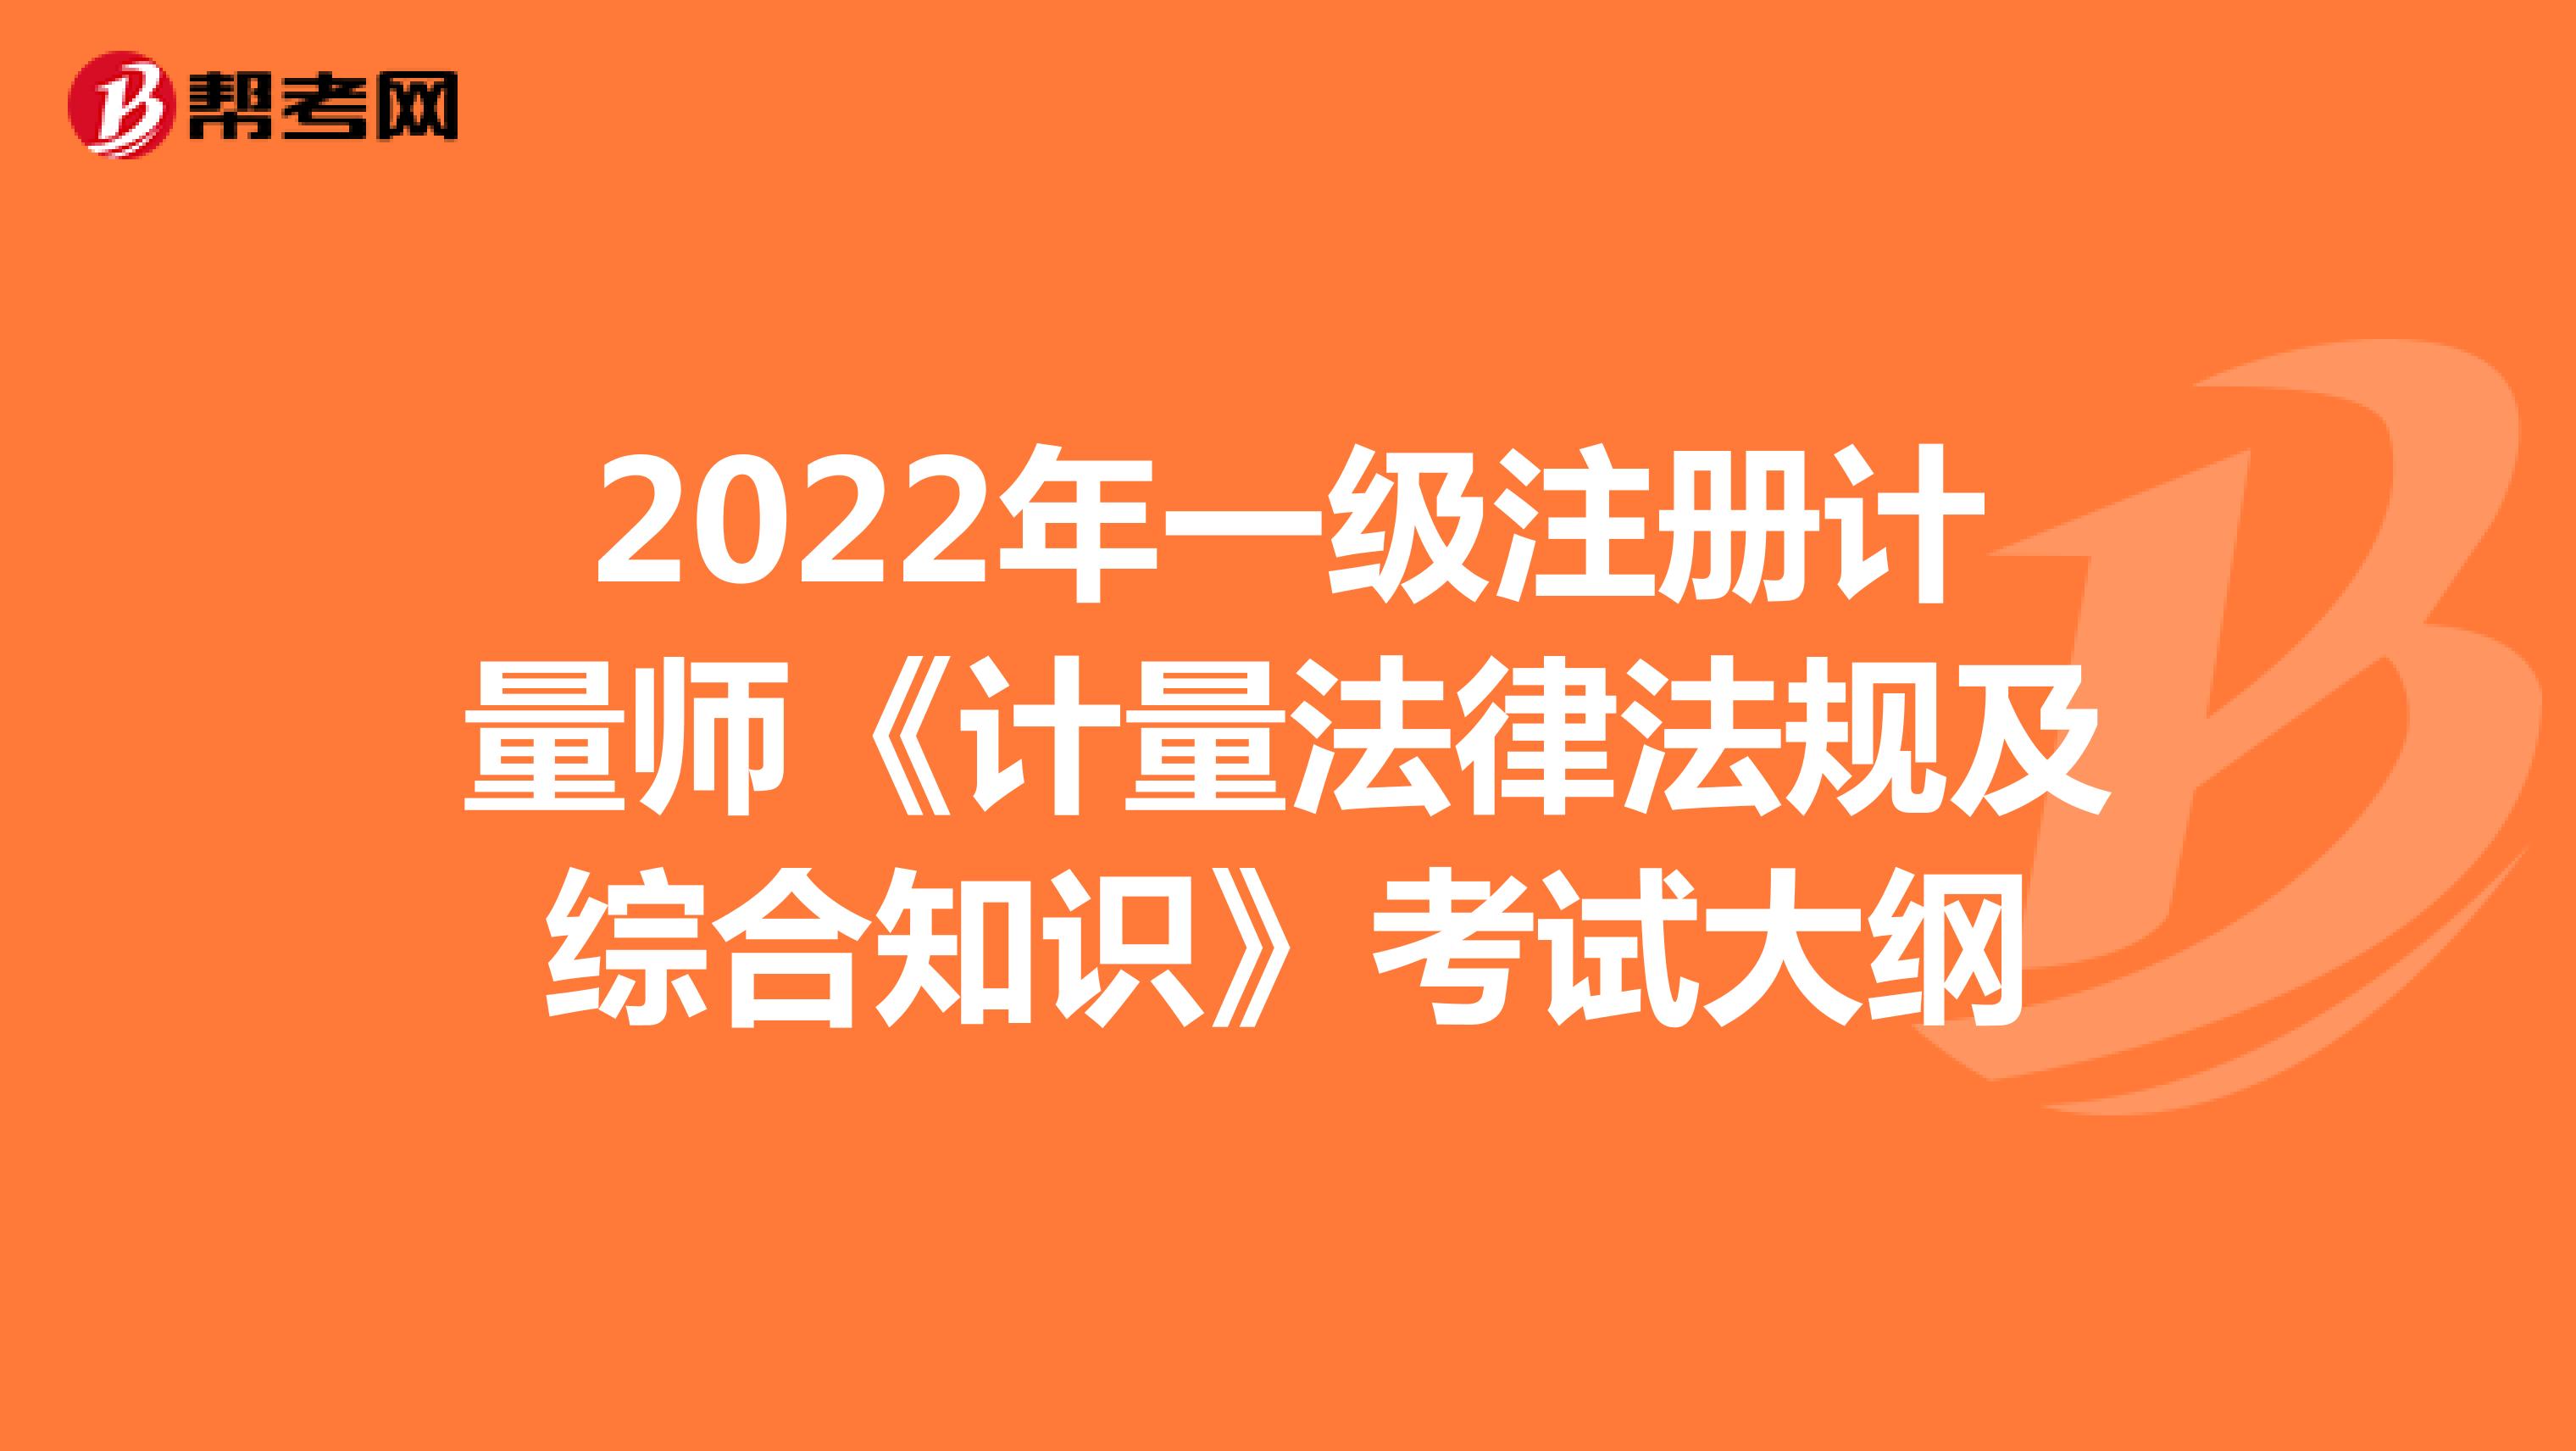 2022年一级注册计量师《计量法律法规及综合知识》考试大纲